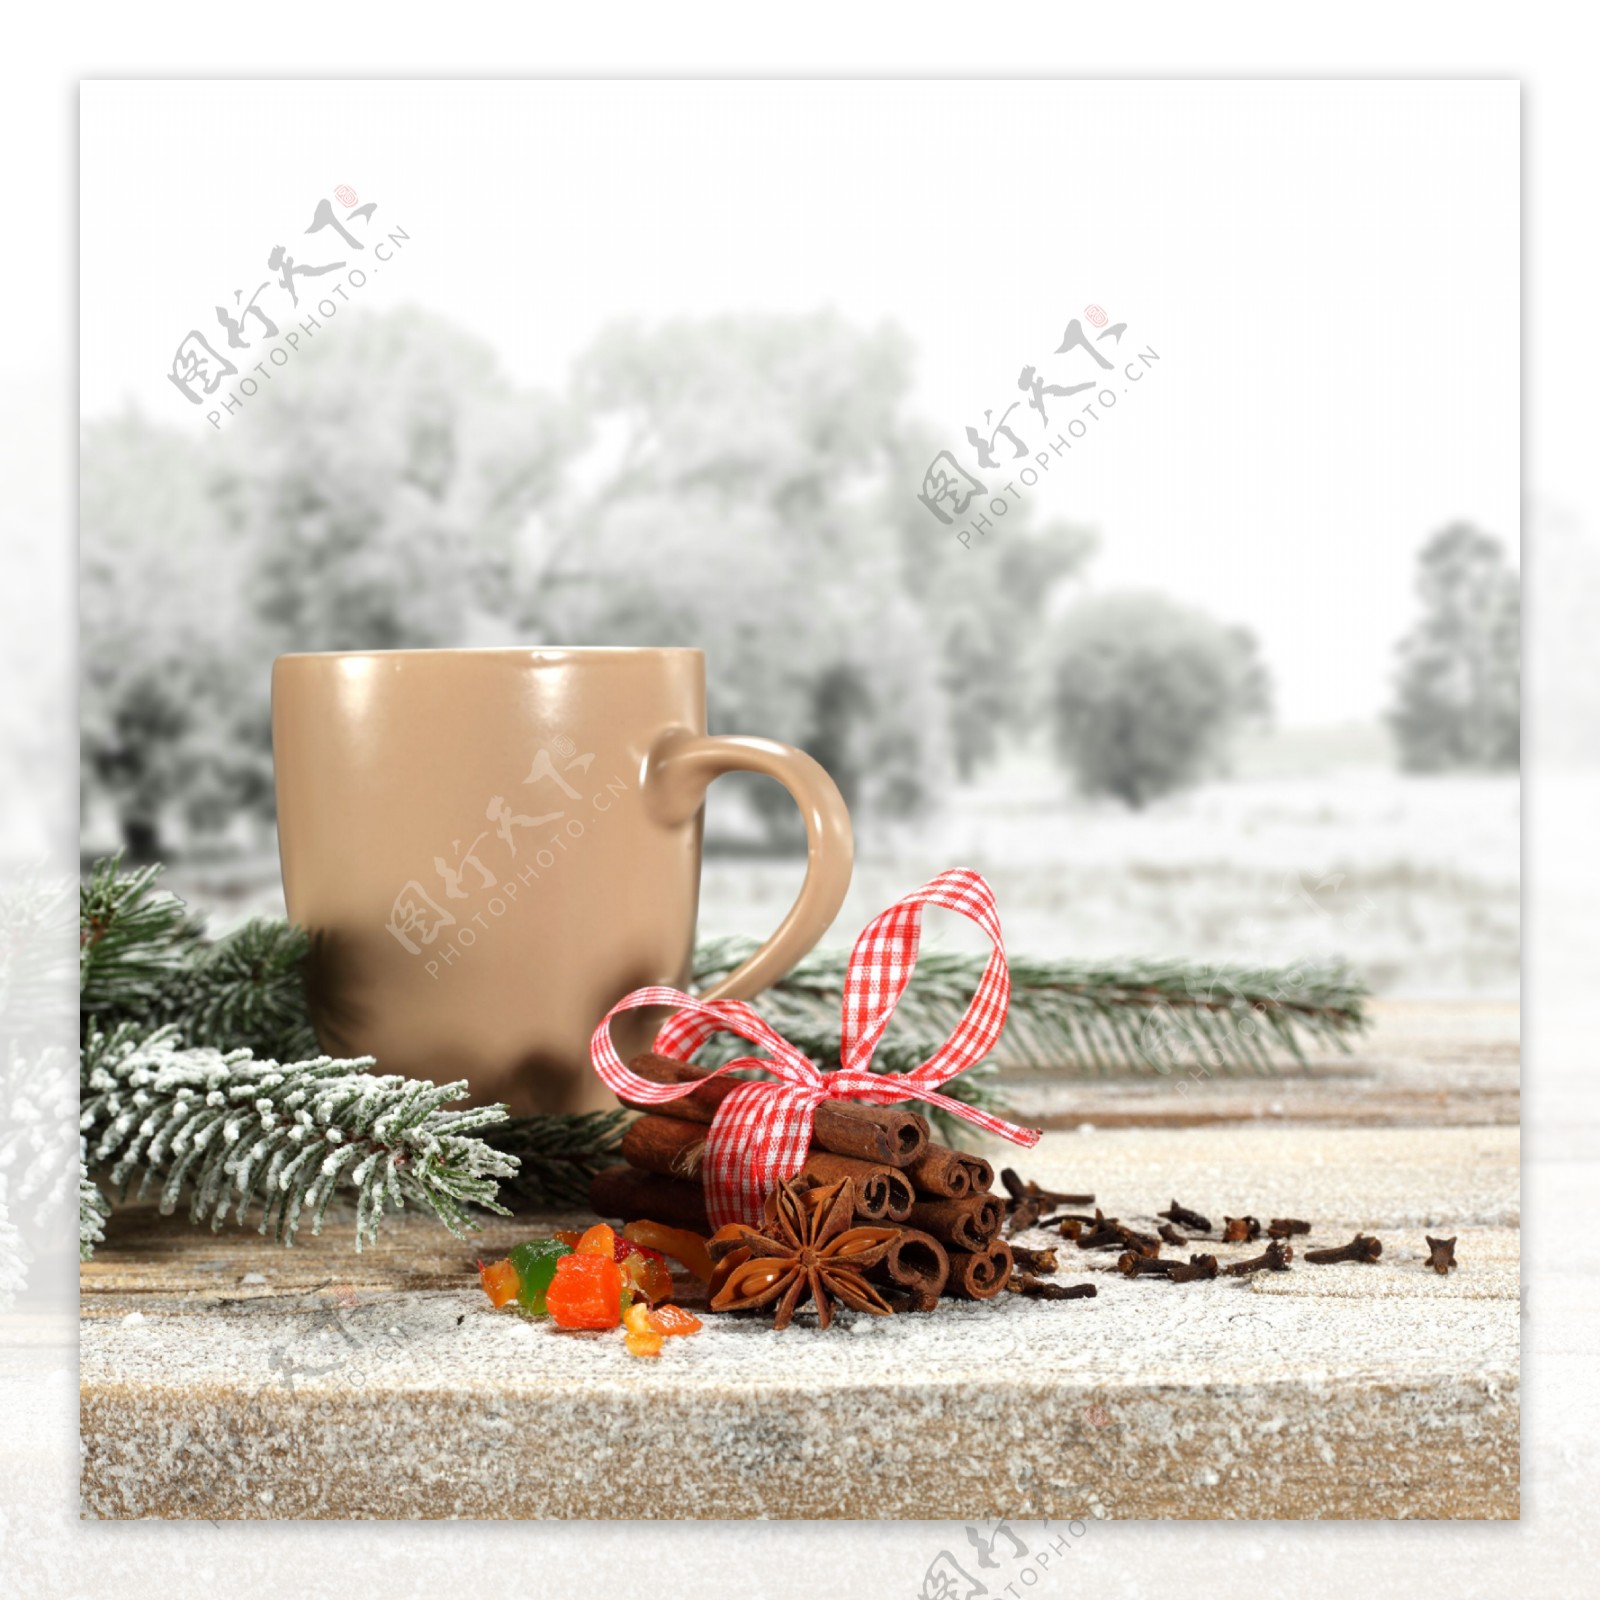 香料松枝和咖啡杯图片